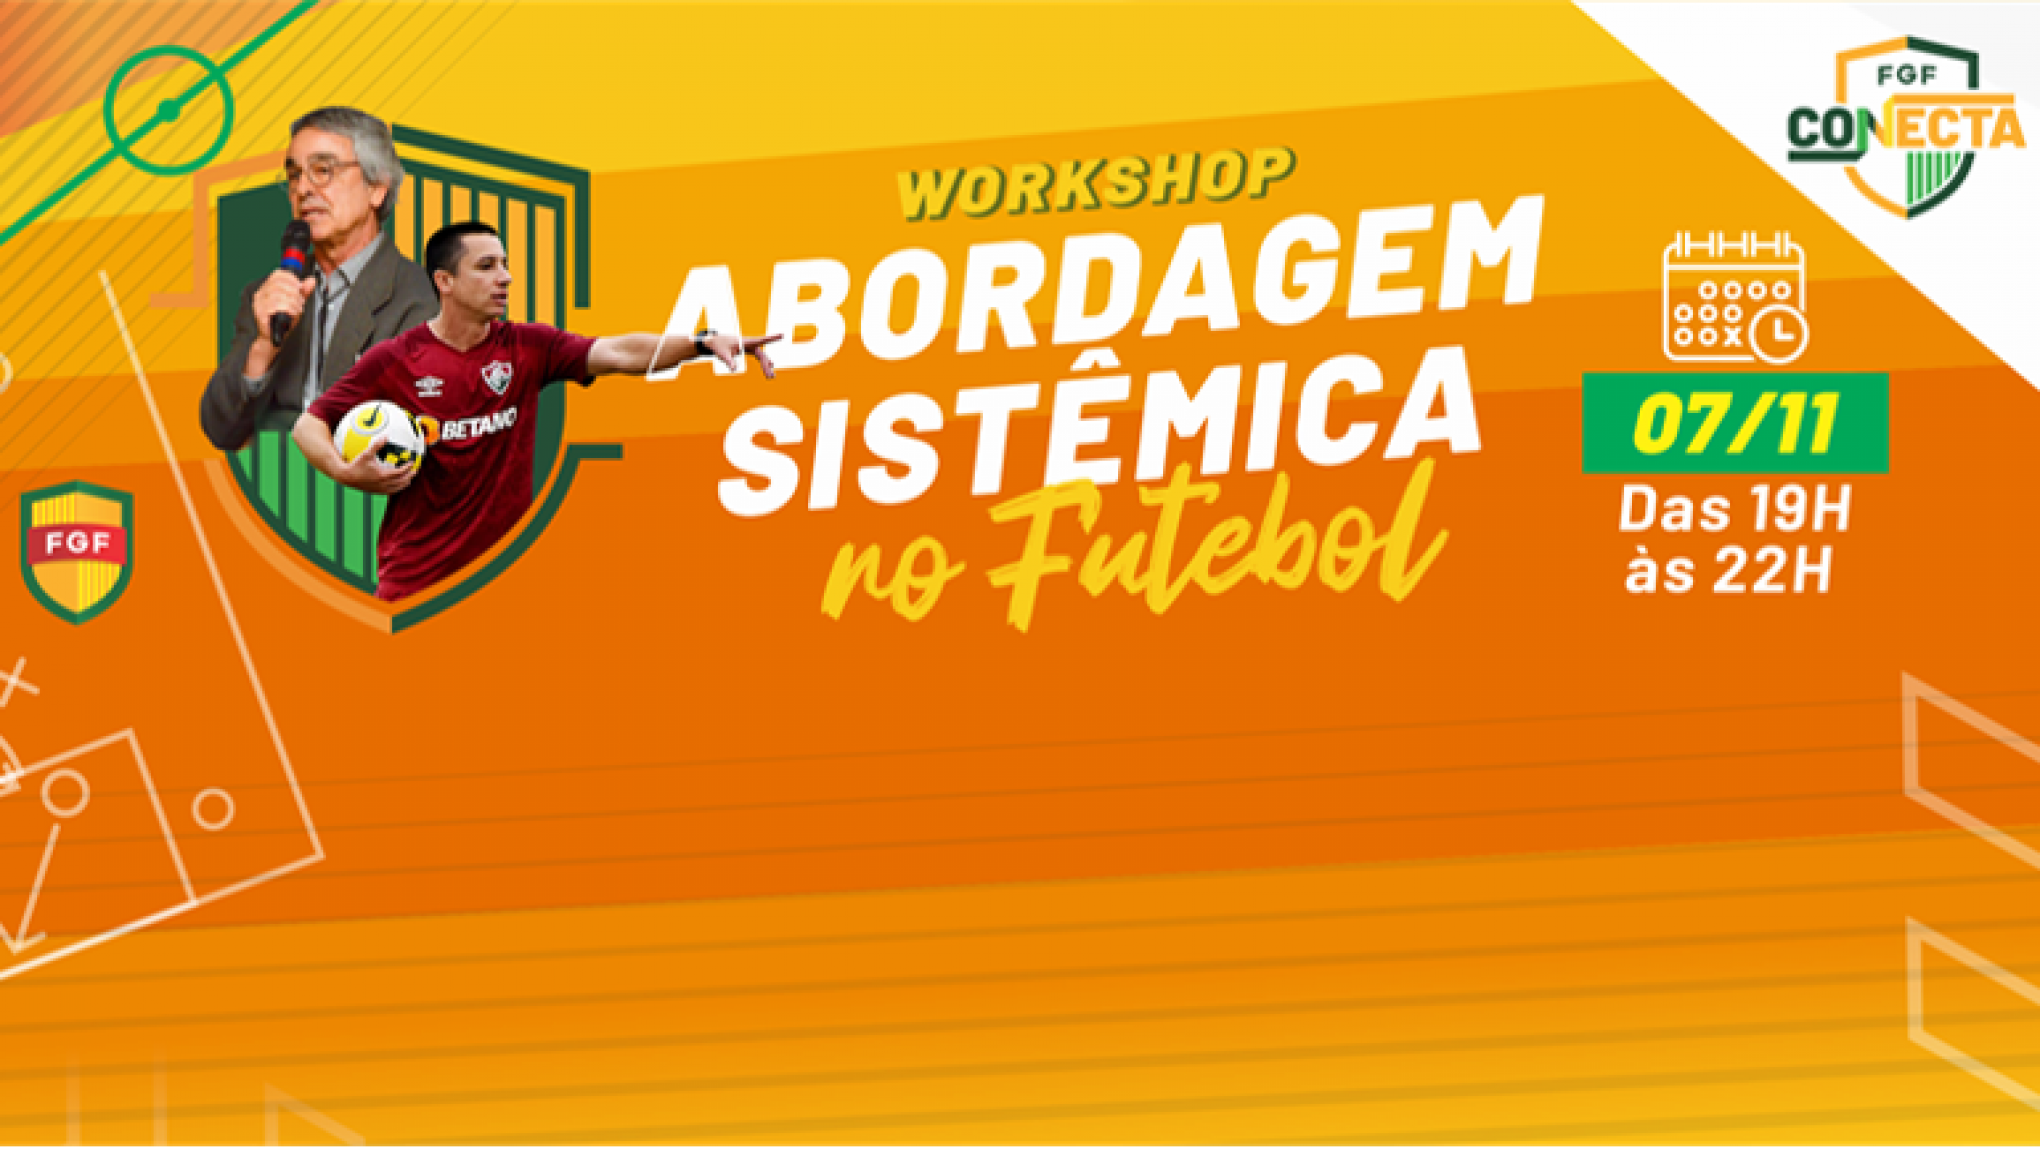 Auxiliar técnico da Seleção Brasileira, Pedro Barros, será palestrante de workshop do FGF Conecta